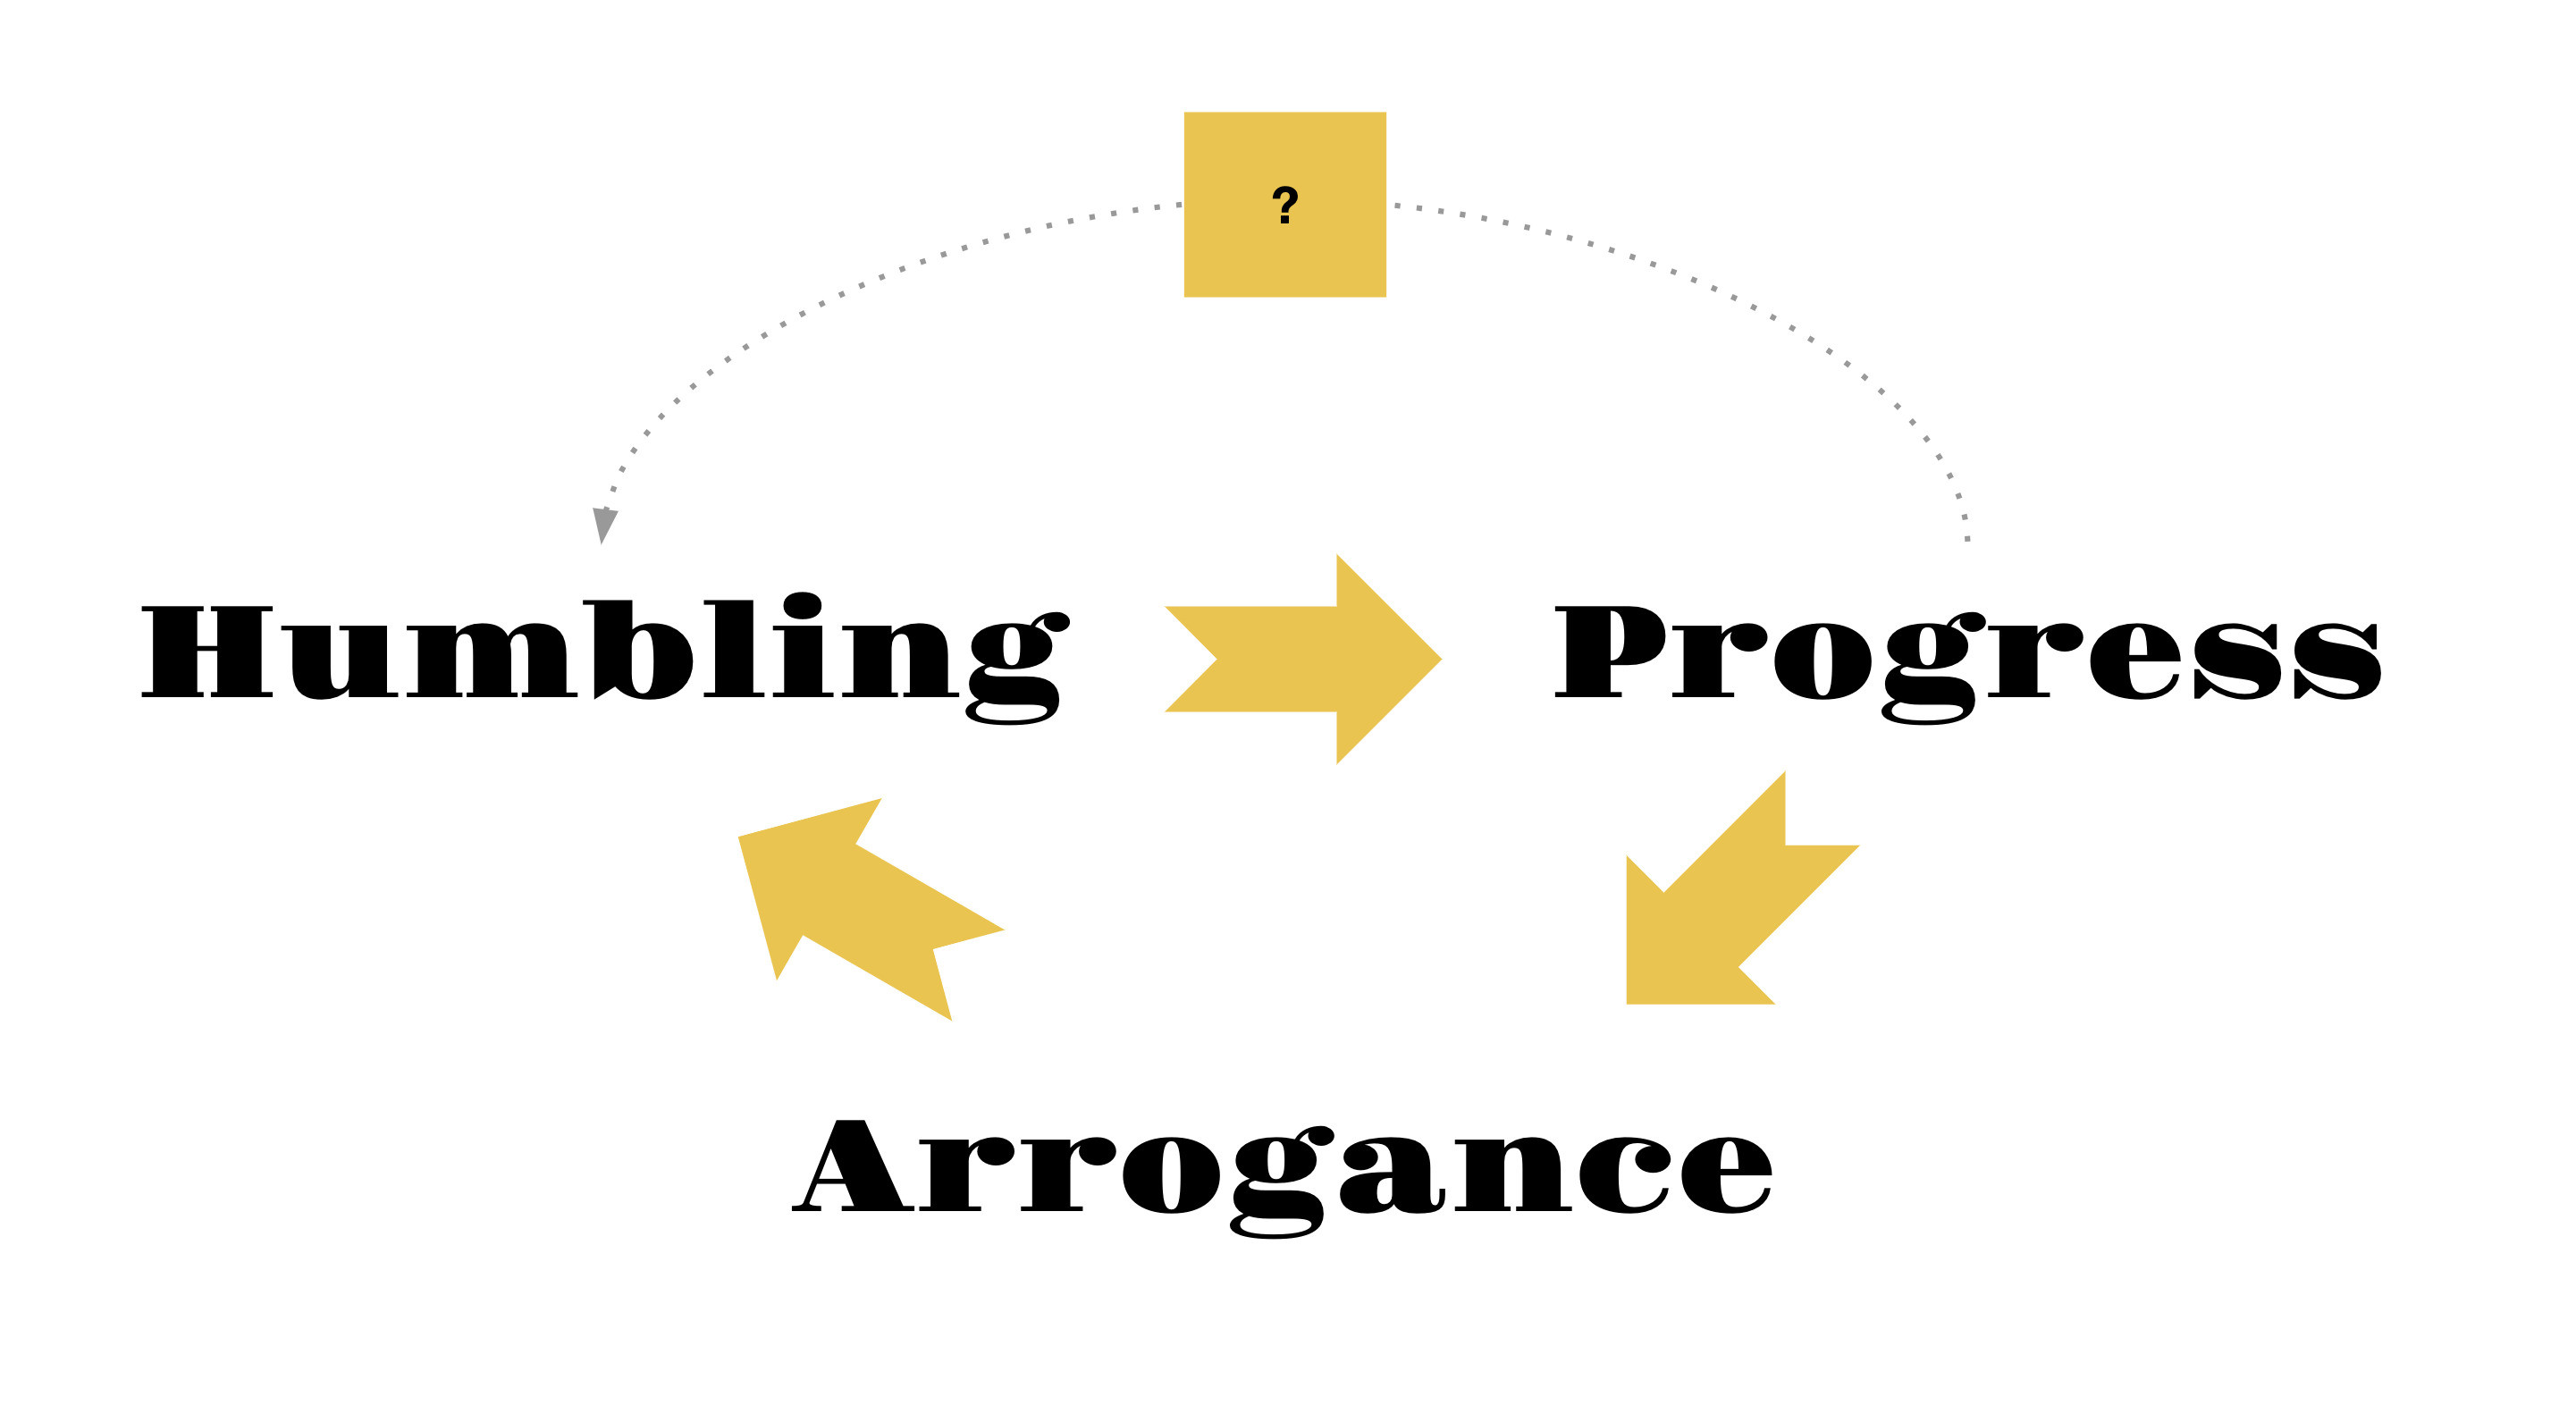 Arrogance, Humbling, Progress loop